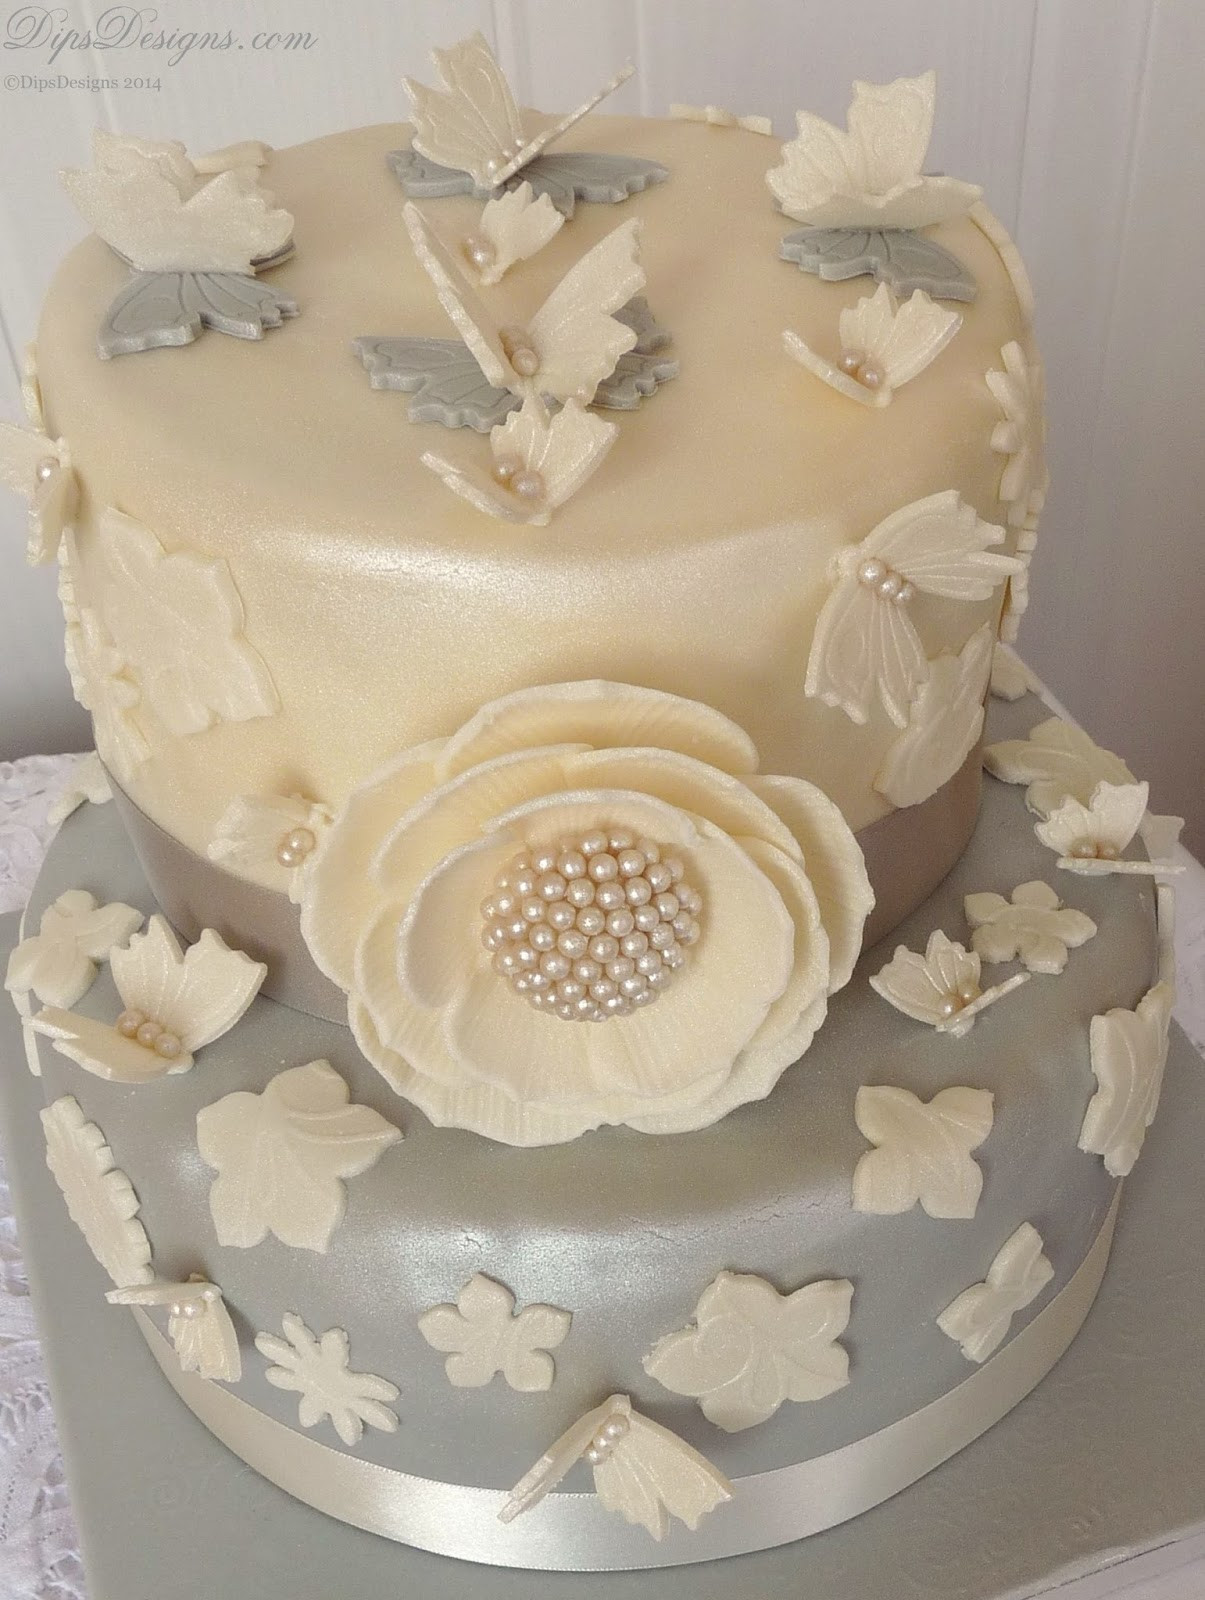 Diamond Wedding Cakes
 DipsDesigns Ivory & Platinum Diamond Wedding Anniversary Cake